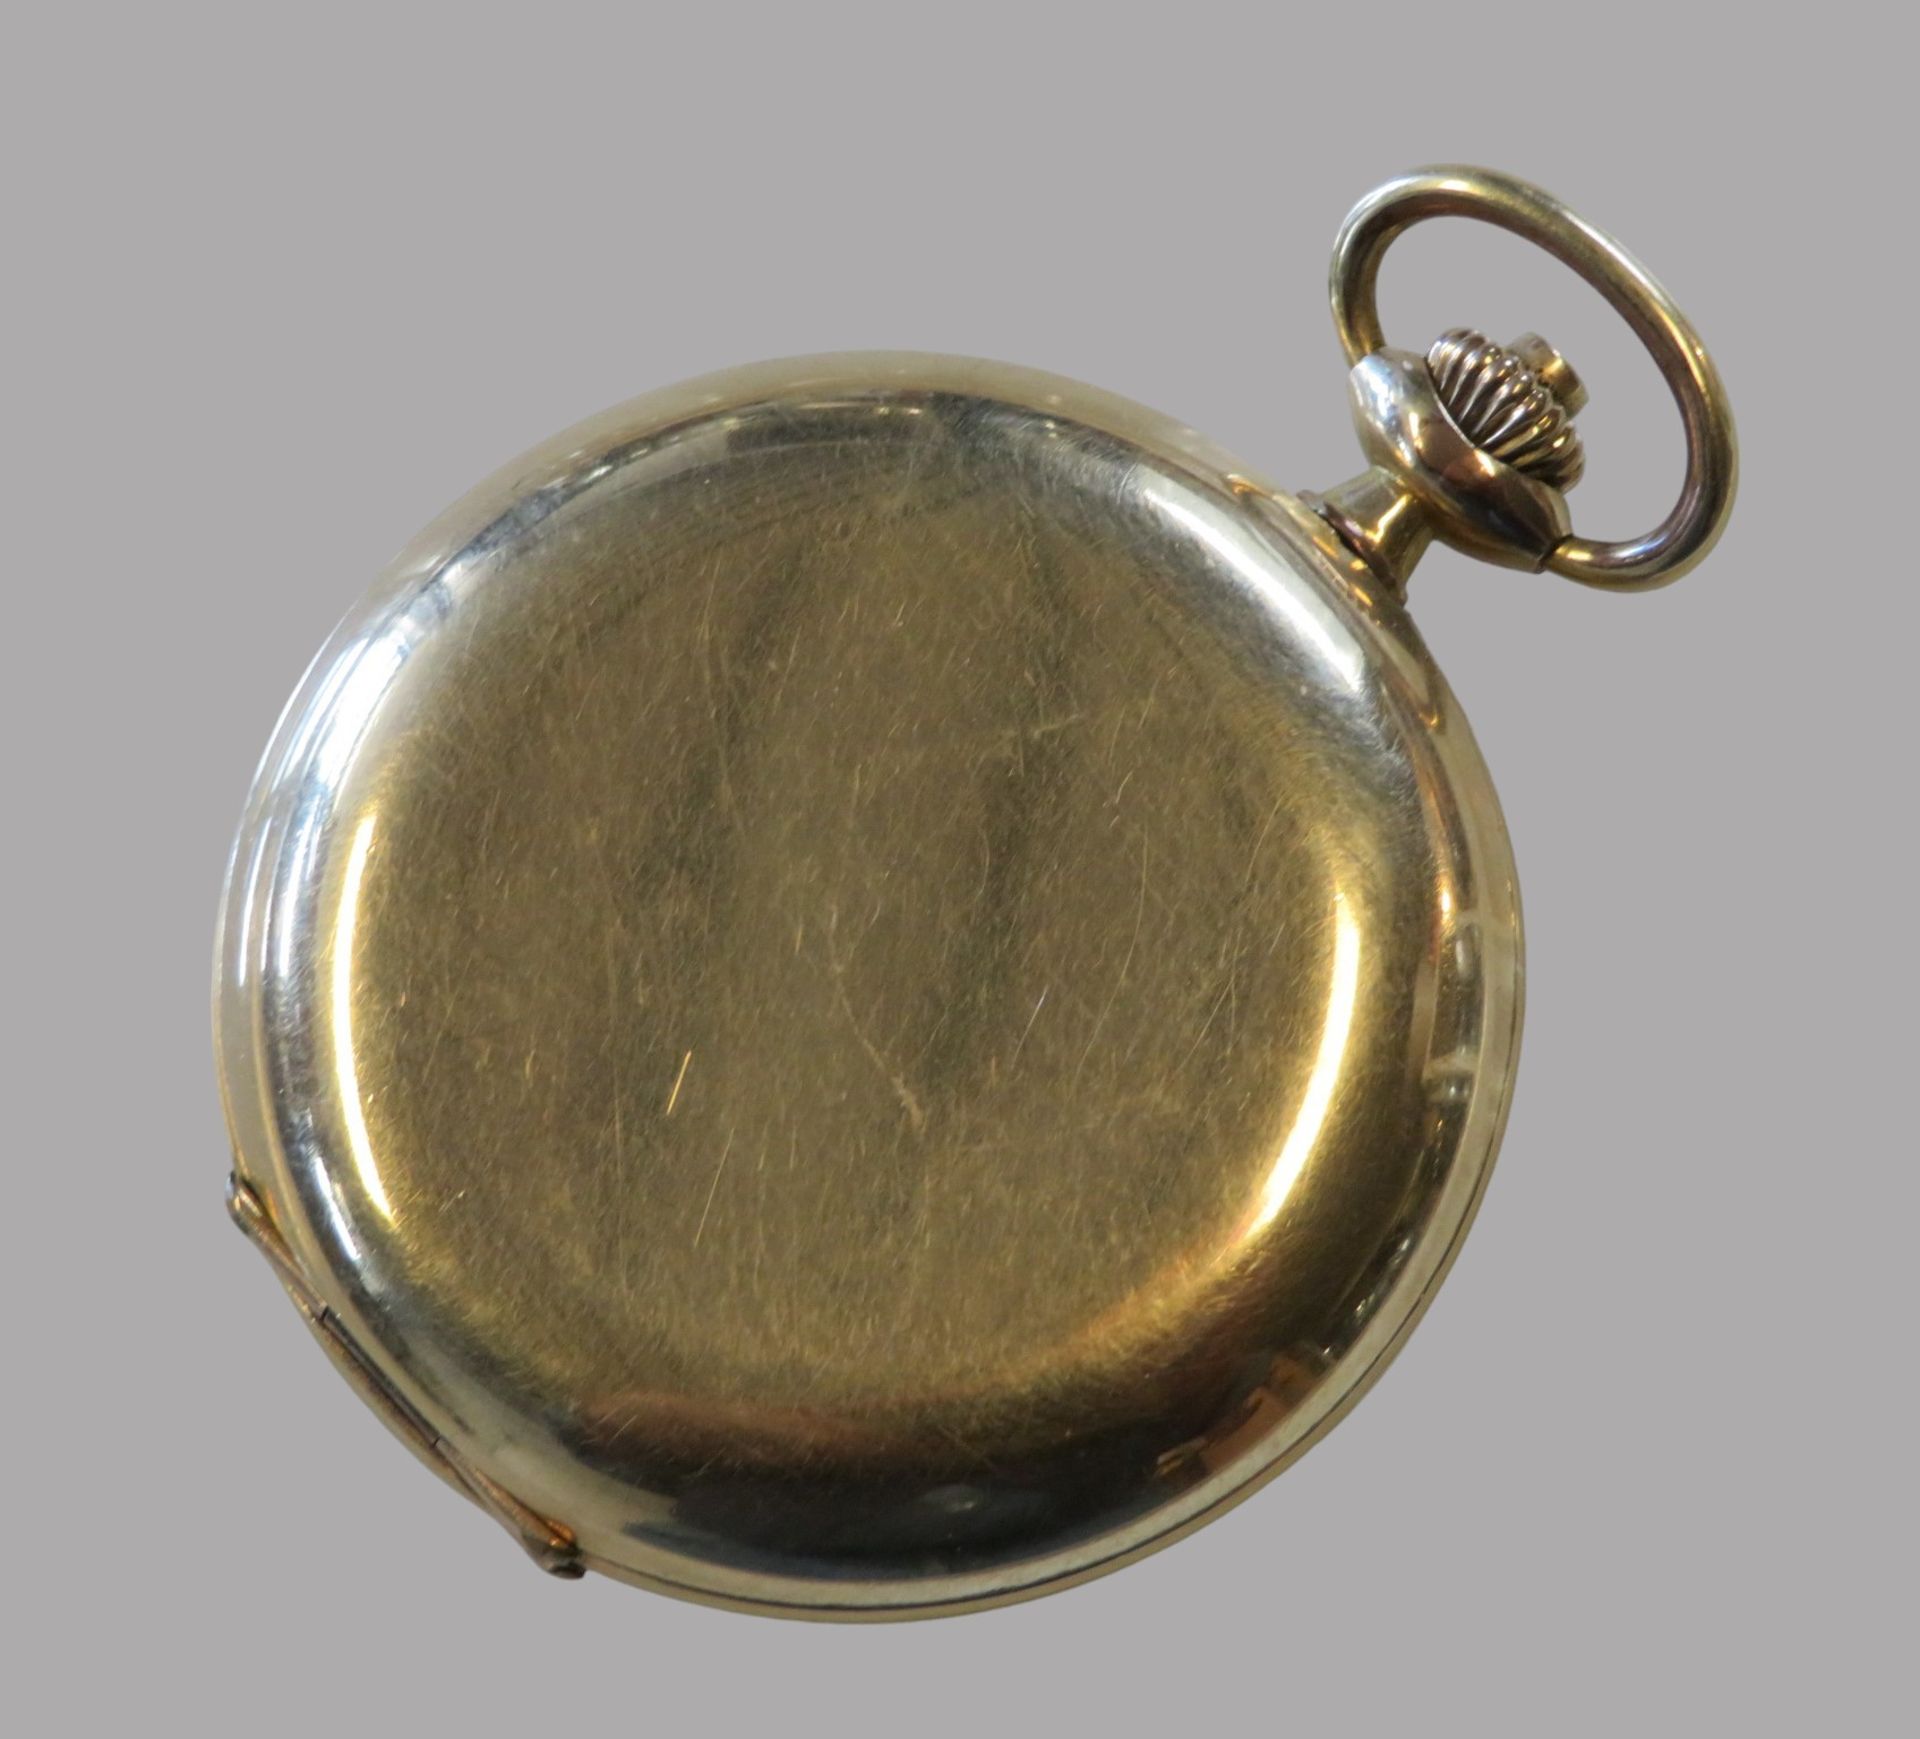 Taschenuhr, Stowa, 1. Hälfte 20. Jahrhundert, Gehäuse 40 Micron vergoldet, mit Widmung, Kronenaufzu - Bild 2 aus 4